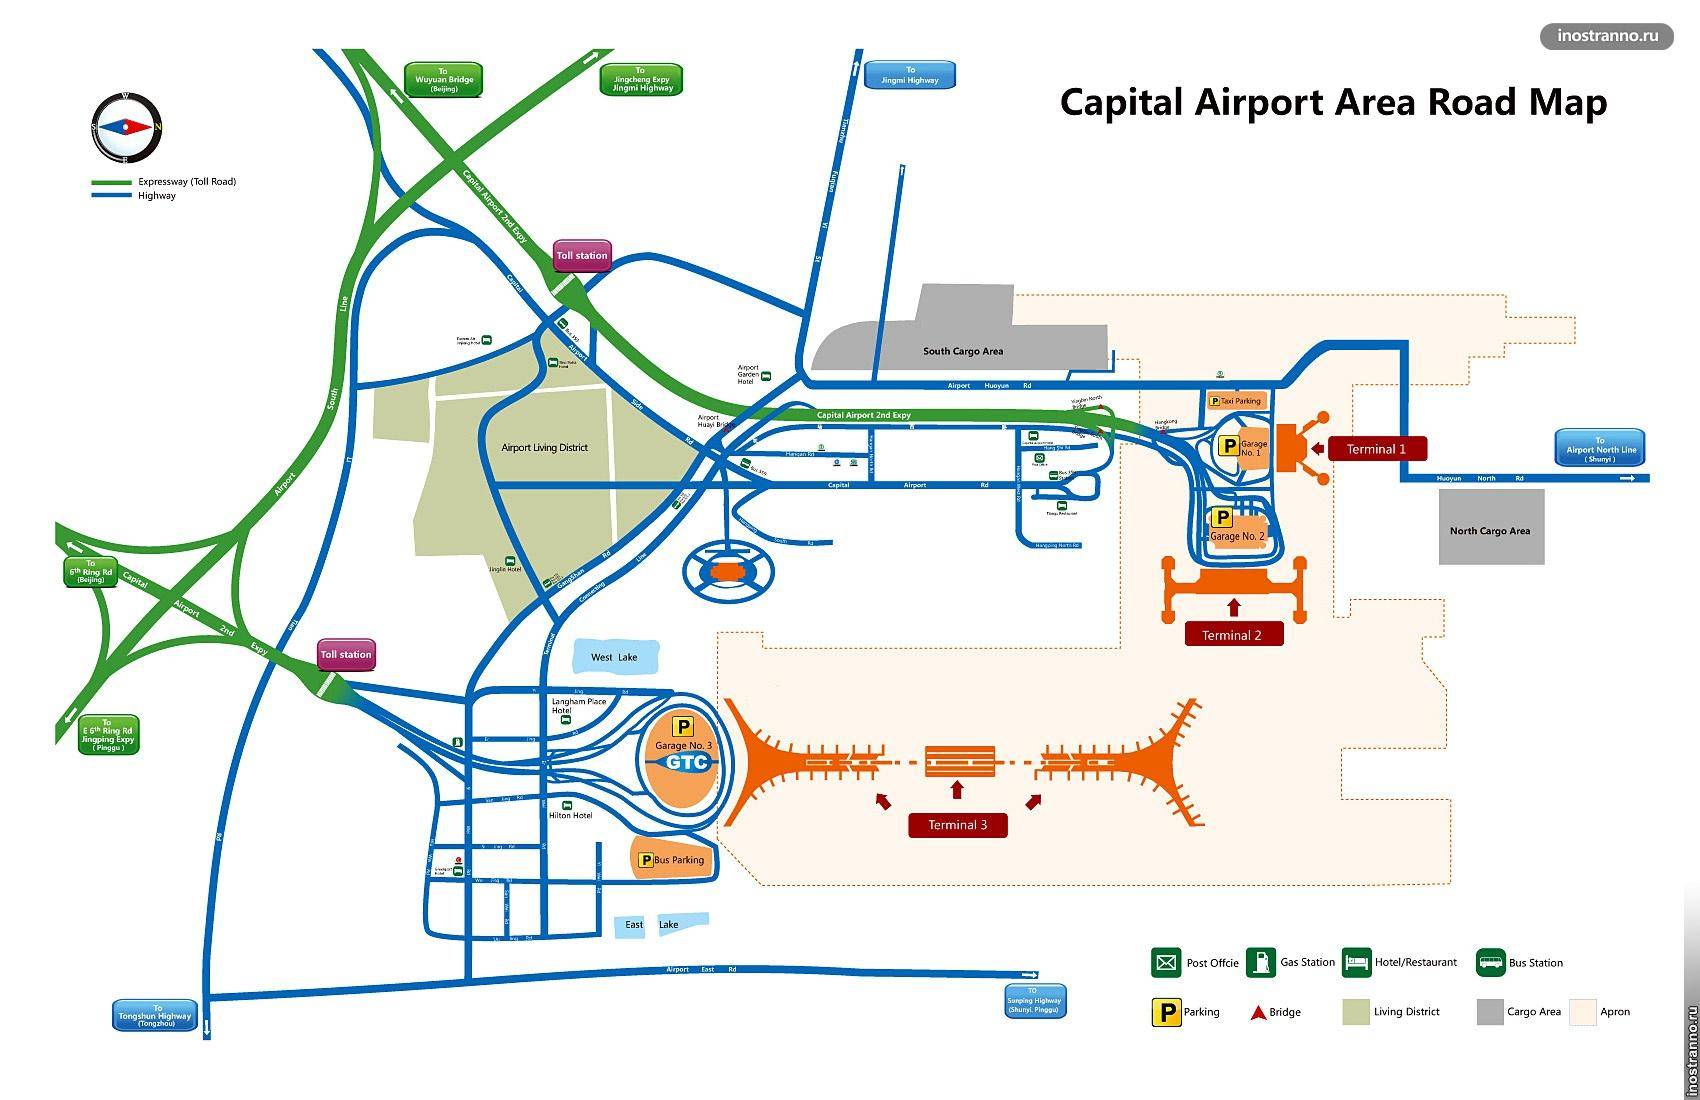 Аэропорт пекина шоуду и как добраться до центра города: автобусы, такси